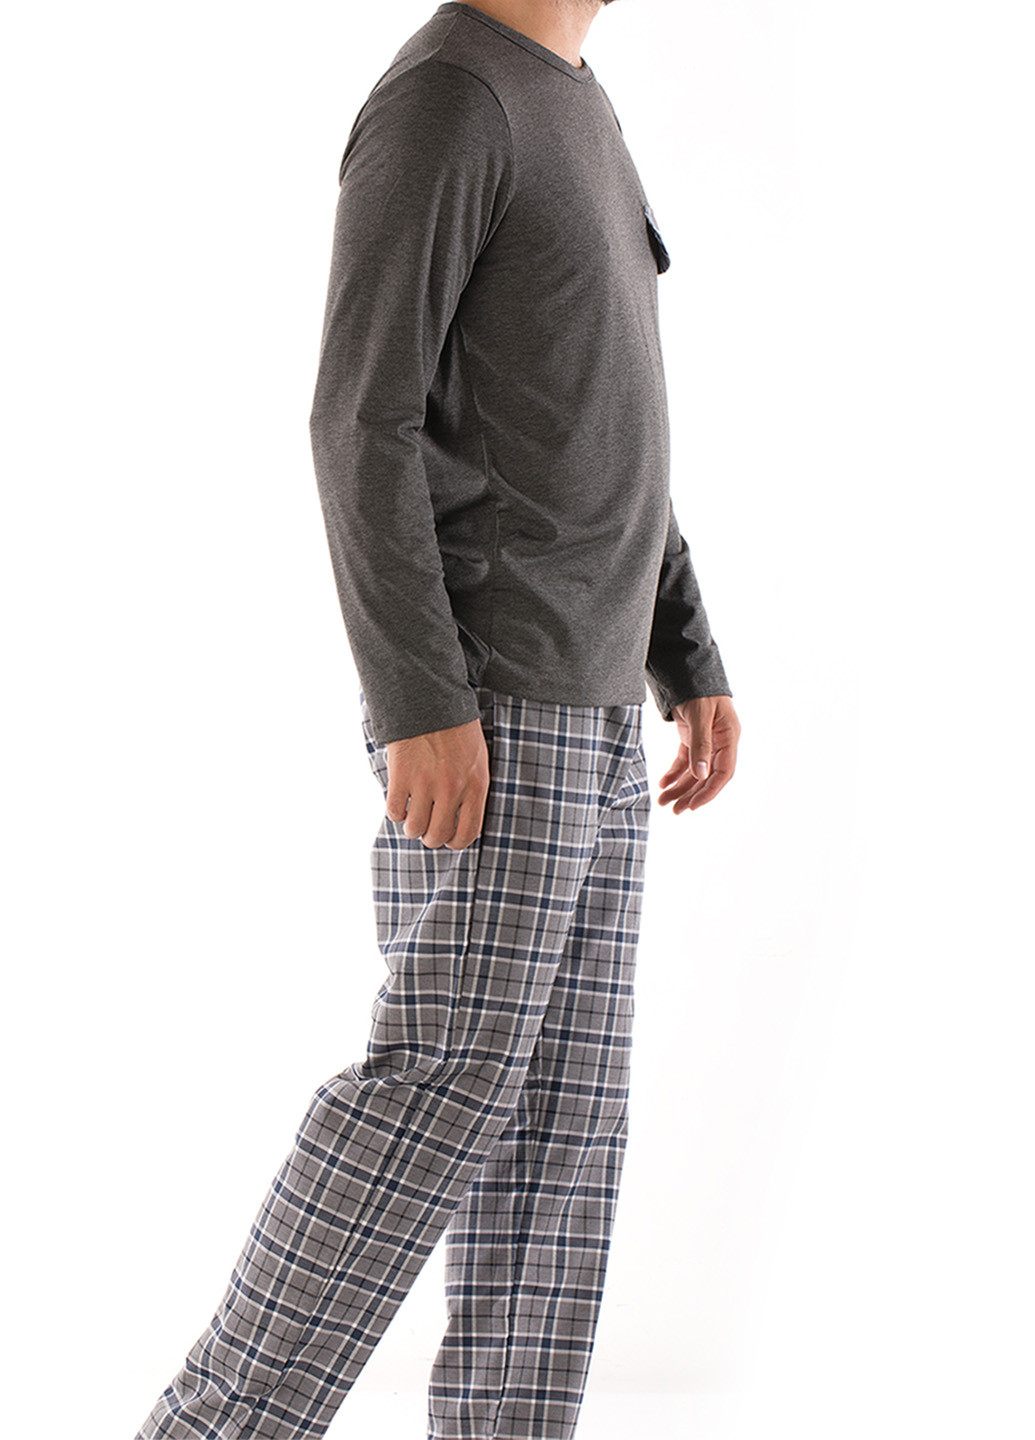 Пижама (лонгслив, брюки) DoReMi лонгслив + брюки меланж тёмно-серая домашняя полиэстер, хлопок